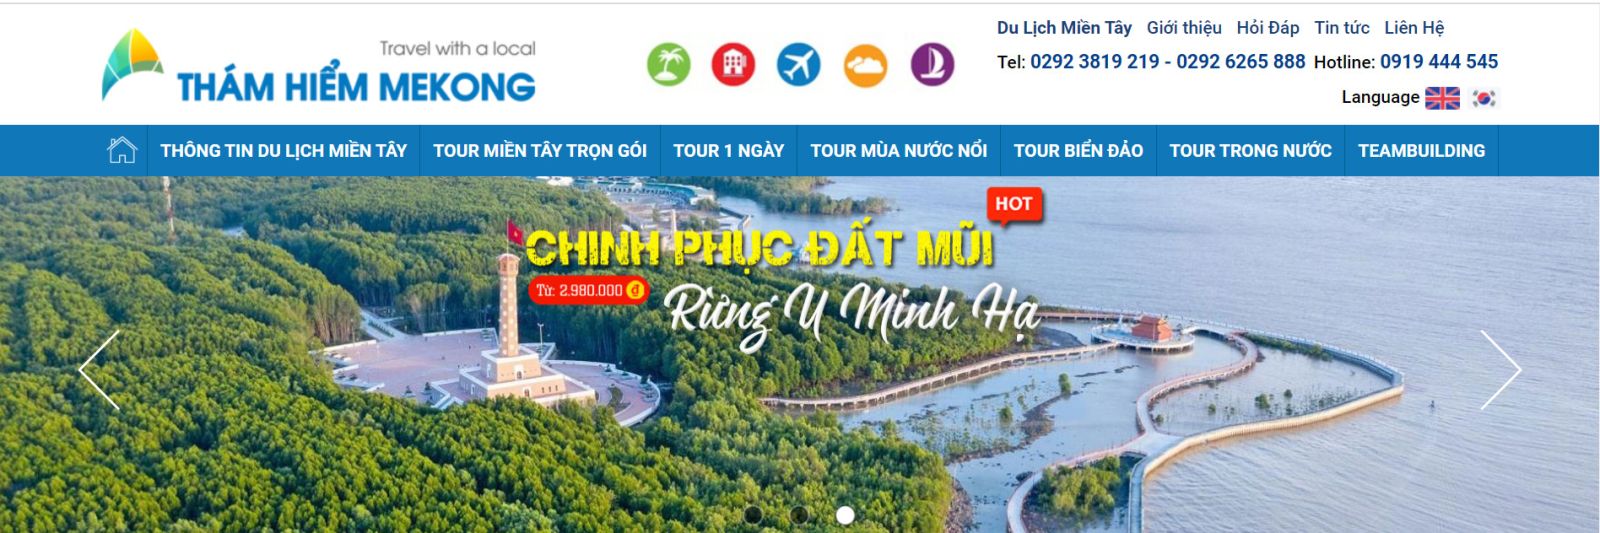 Công Ty Du Lịch Sự Kiện & Thám Hiểm Mekong Cần Thơ - Công ty du lịch tại Cần Thơ